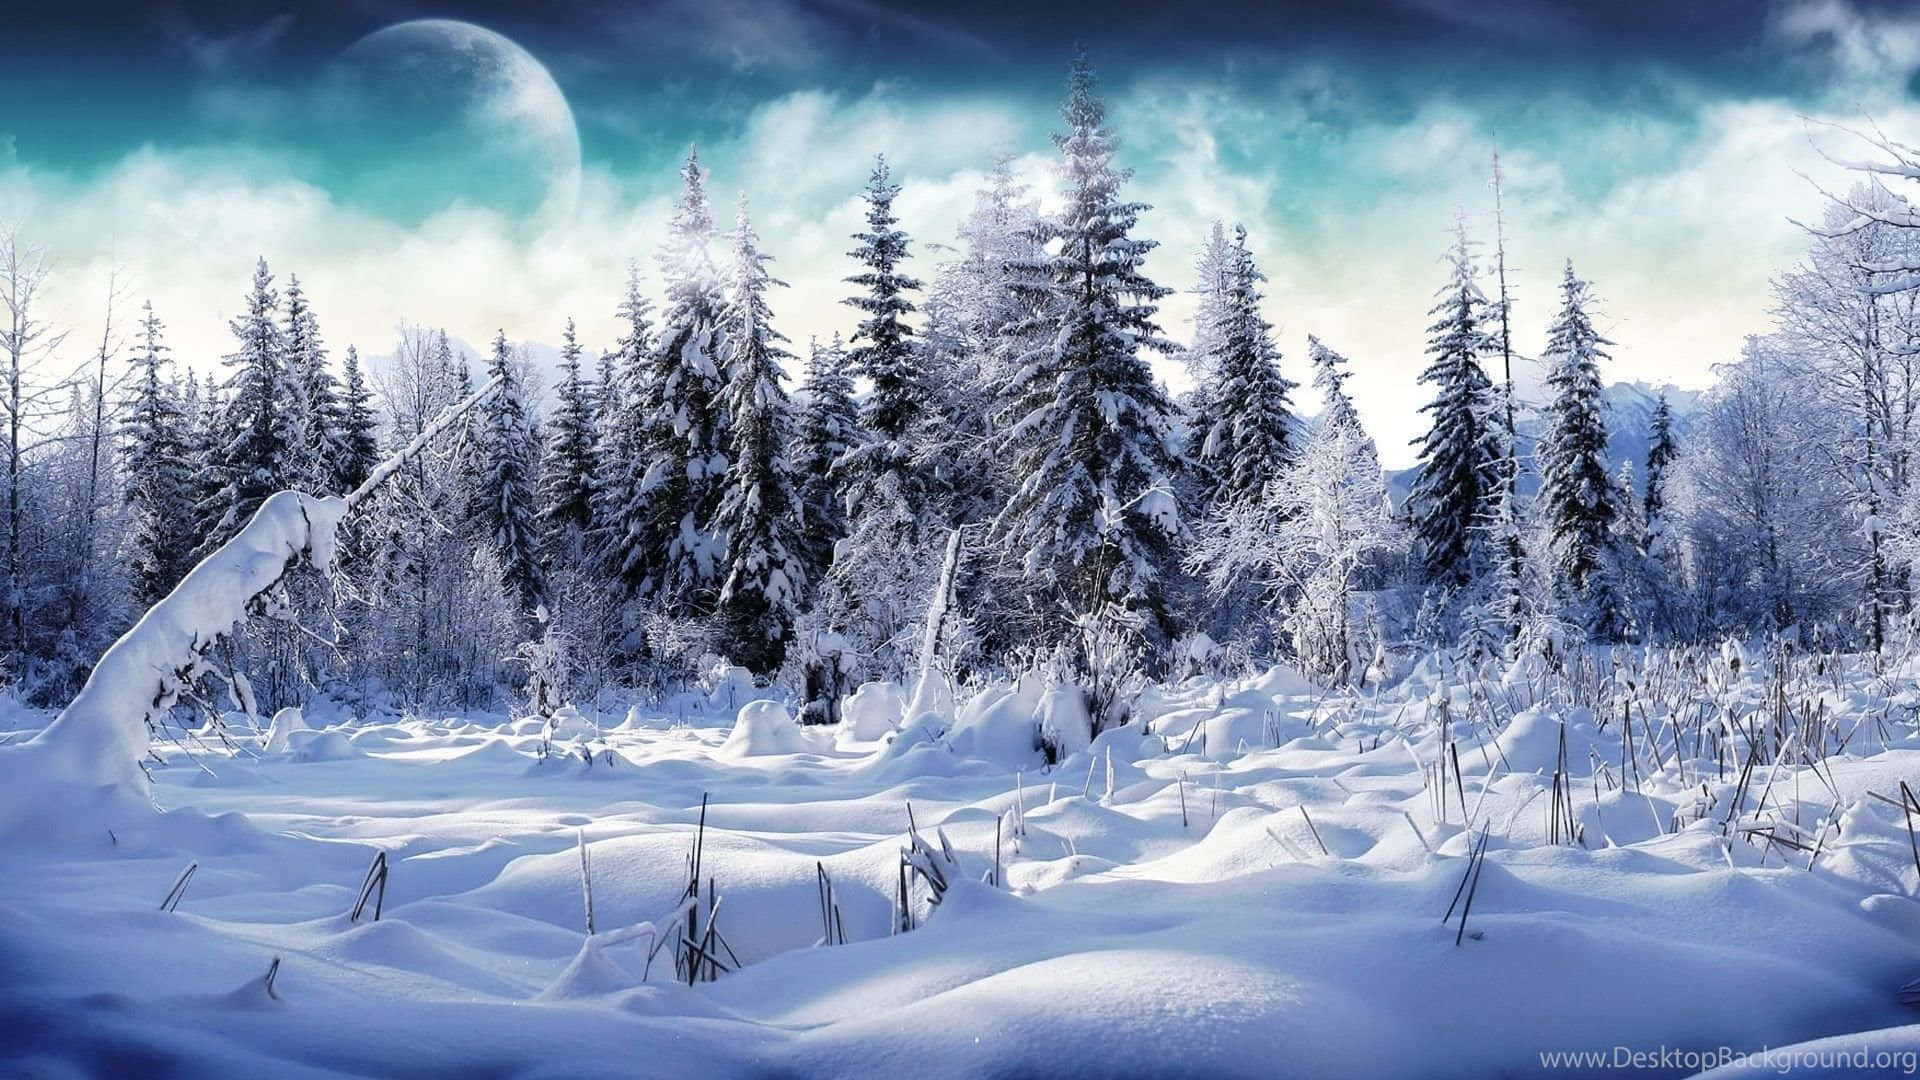 Unaescena De Invierno Con Árboles Cubiertos De Nieve Y Una Luna